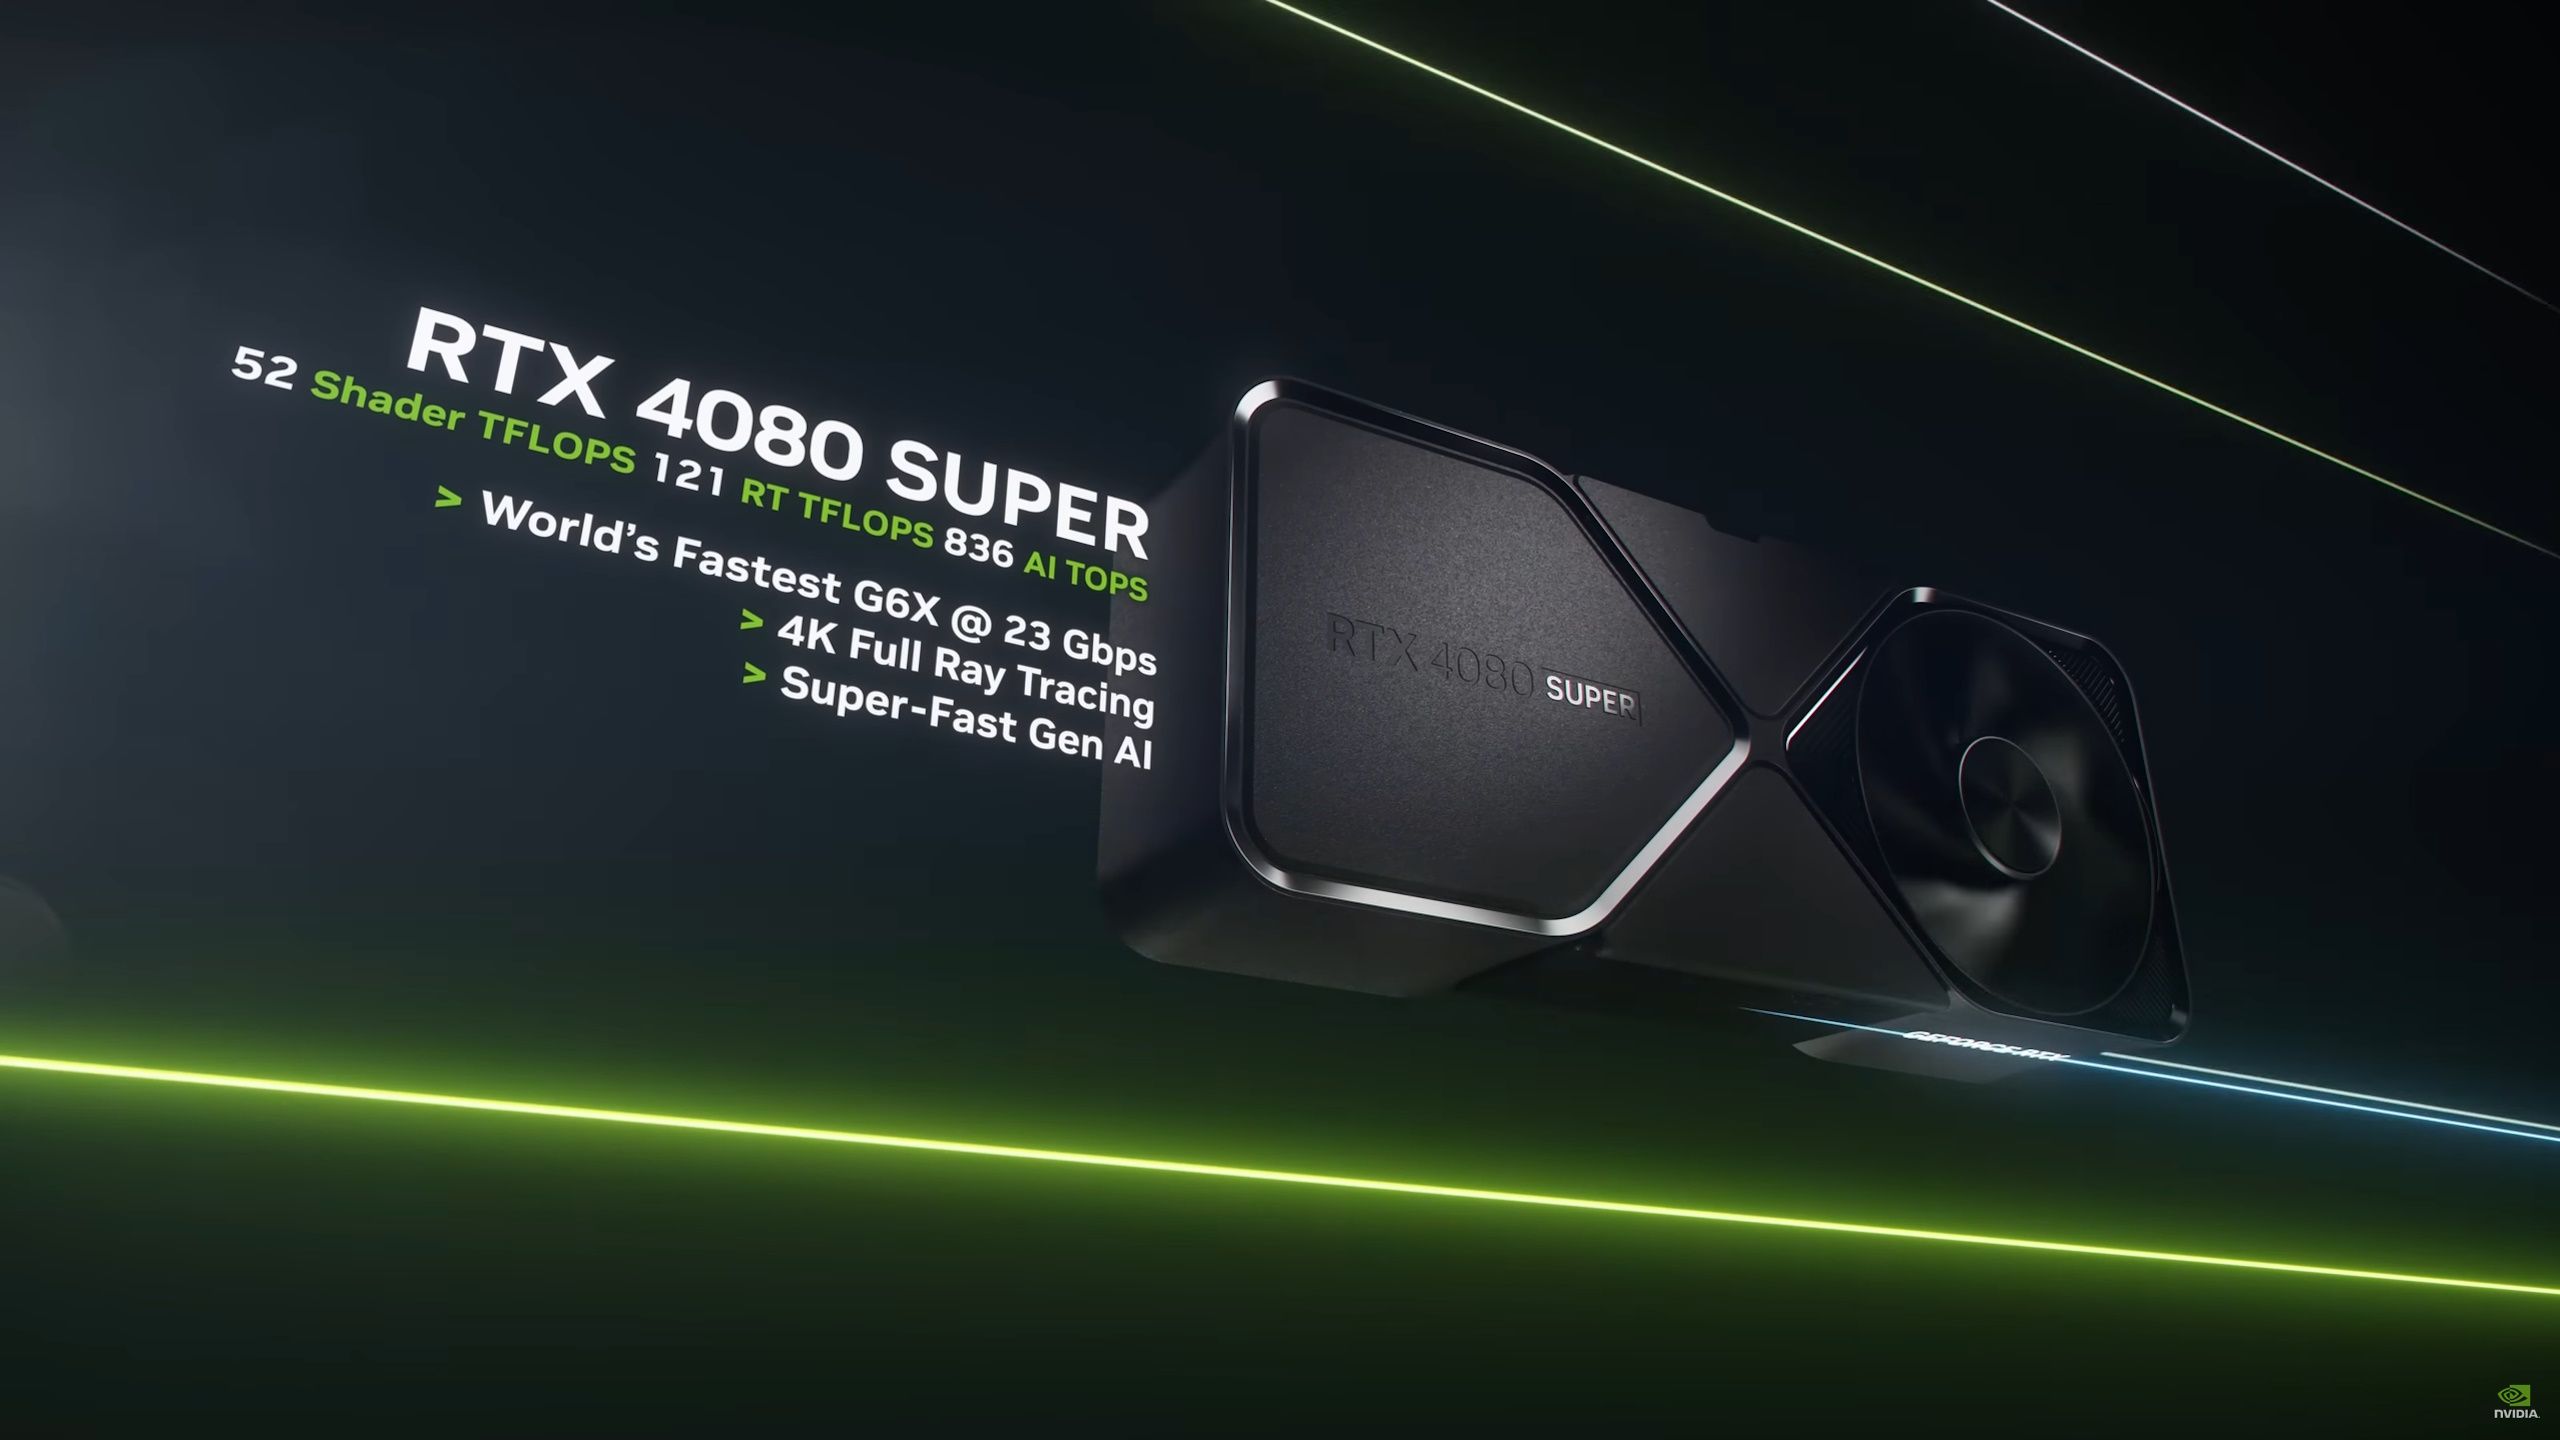 Nvidia GeForce RTX 4080 Super GPU info